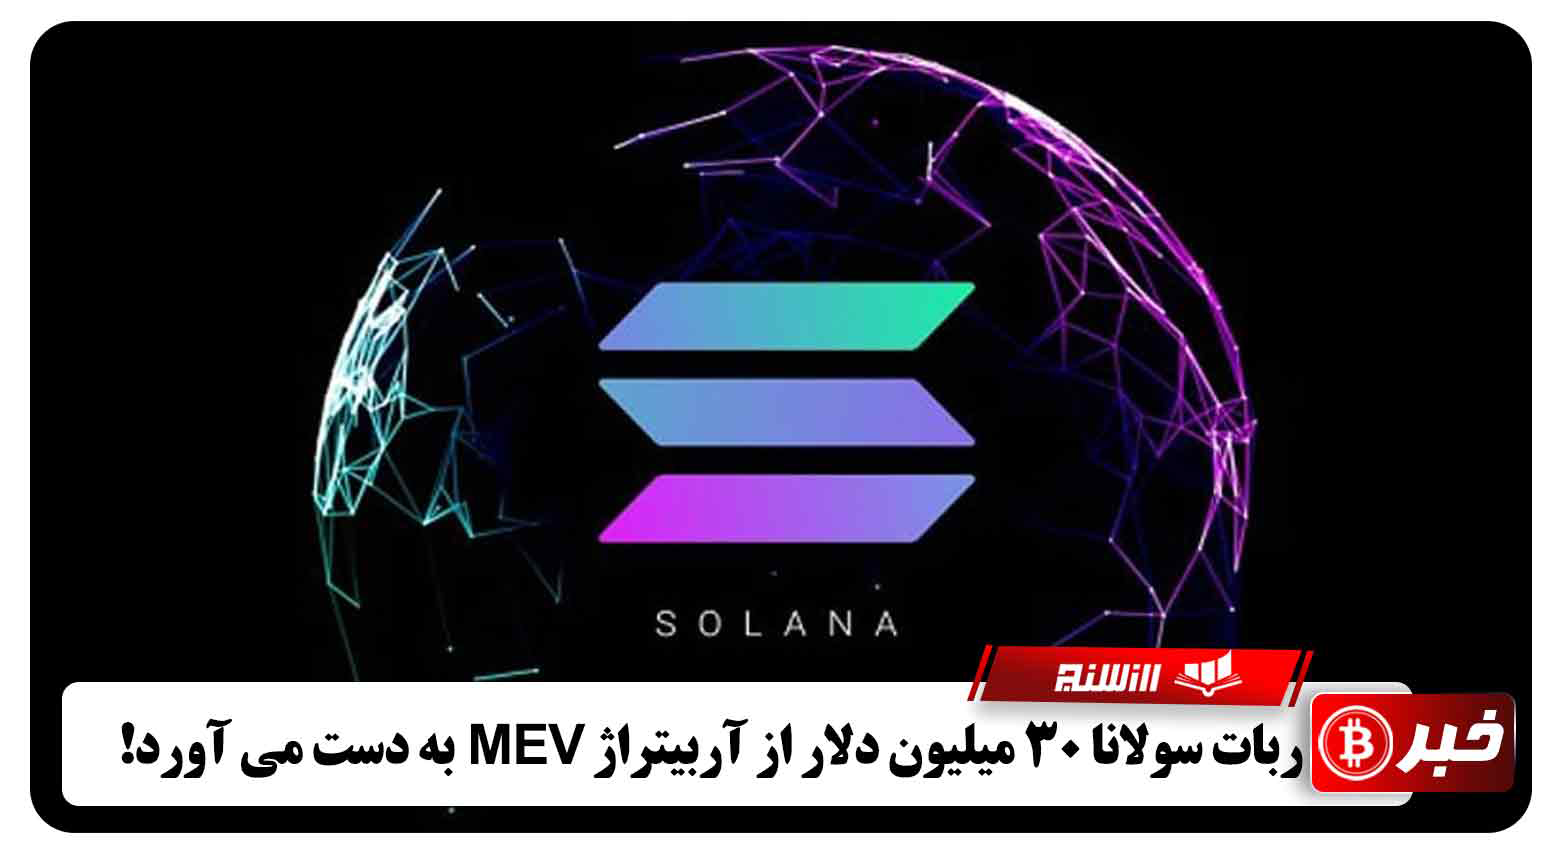 ربات سولانا 30 میلیون دلار از آربیتراژ MEV به دست می آورد